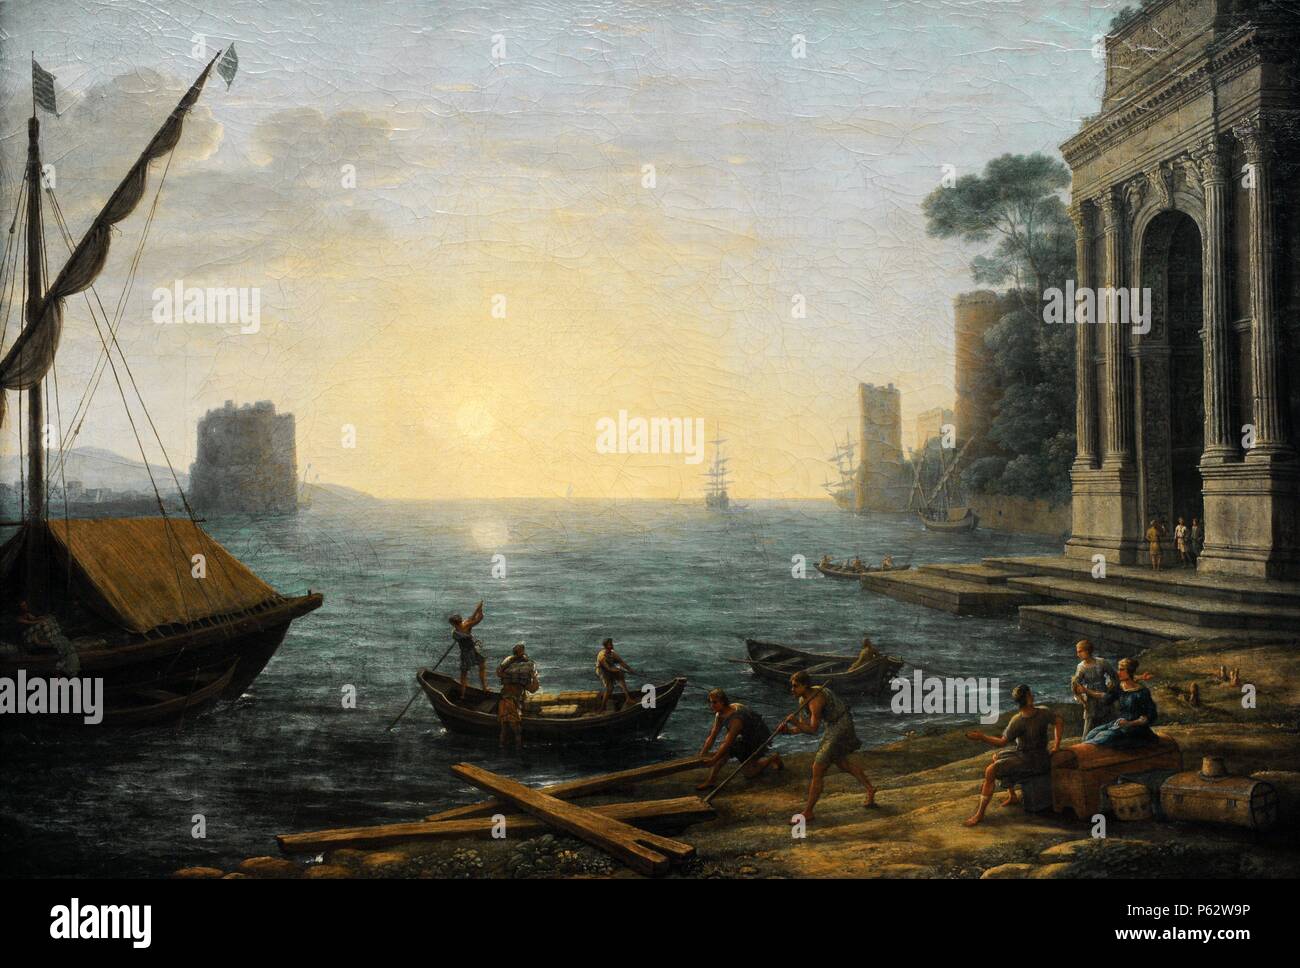 Claude Lorrain (1600-1682). Le peintre français. Port maritime à l'aube, 1674. L'Alte Pinakothek. Munich. L'Allemagne. Banque D'Images